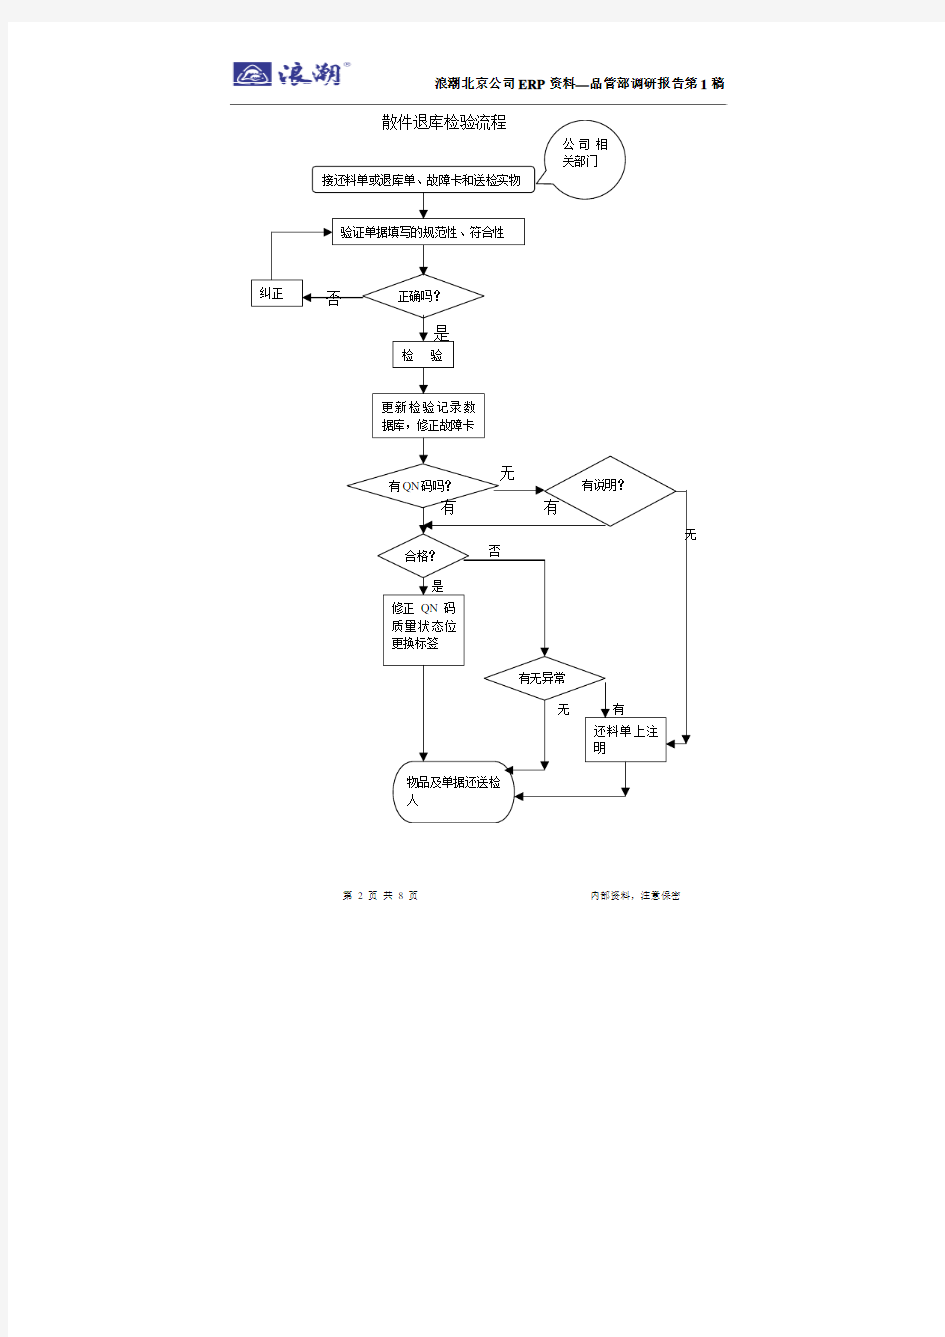 品管部流程图20030728